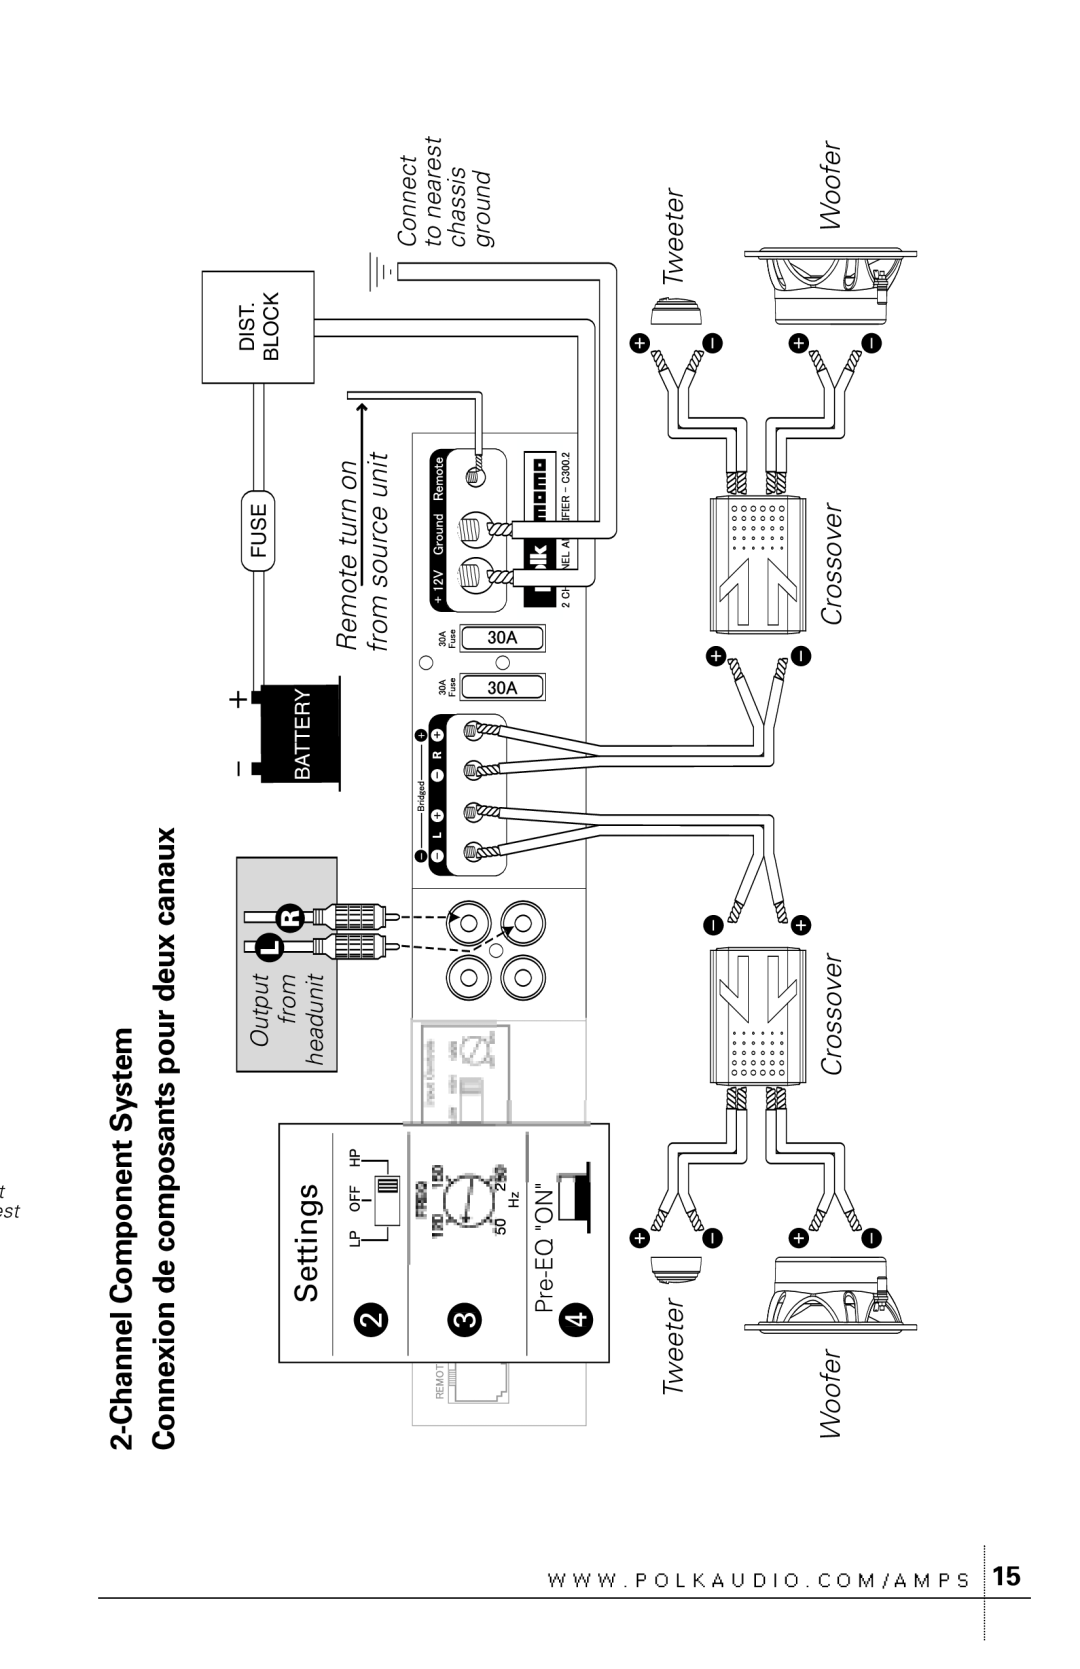 Polk Audio C300.2 ChannelComponent System, Connexion de composants pour deux canaux, Settings, Tweeter, Woofer, Crossover 